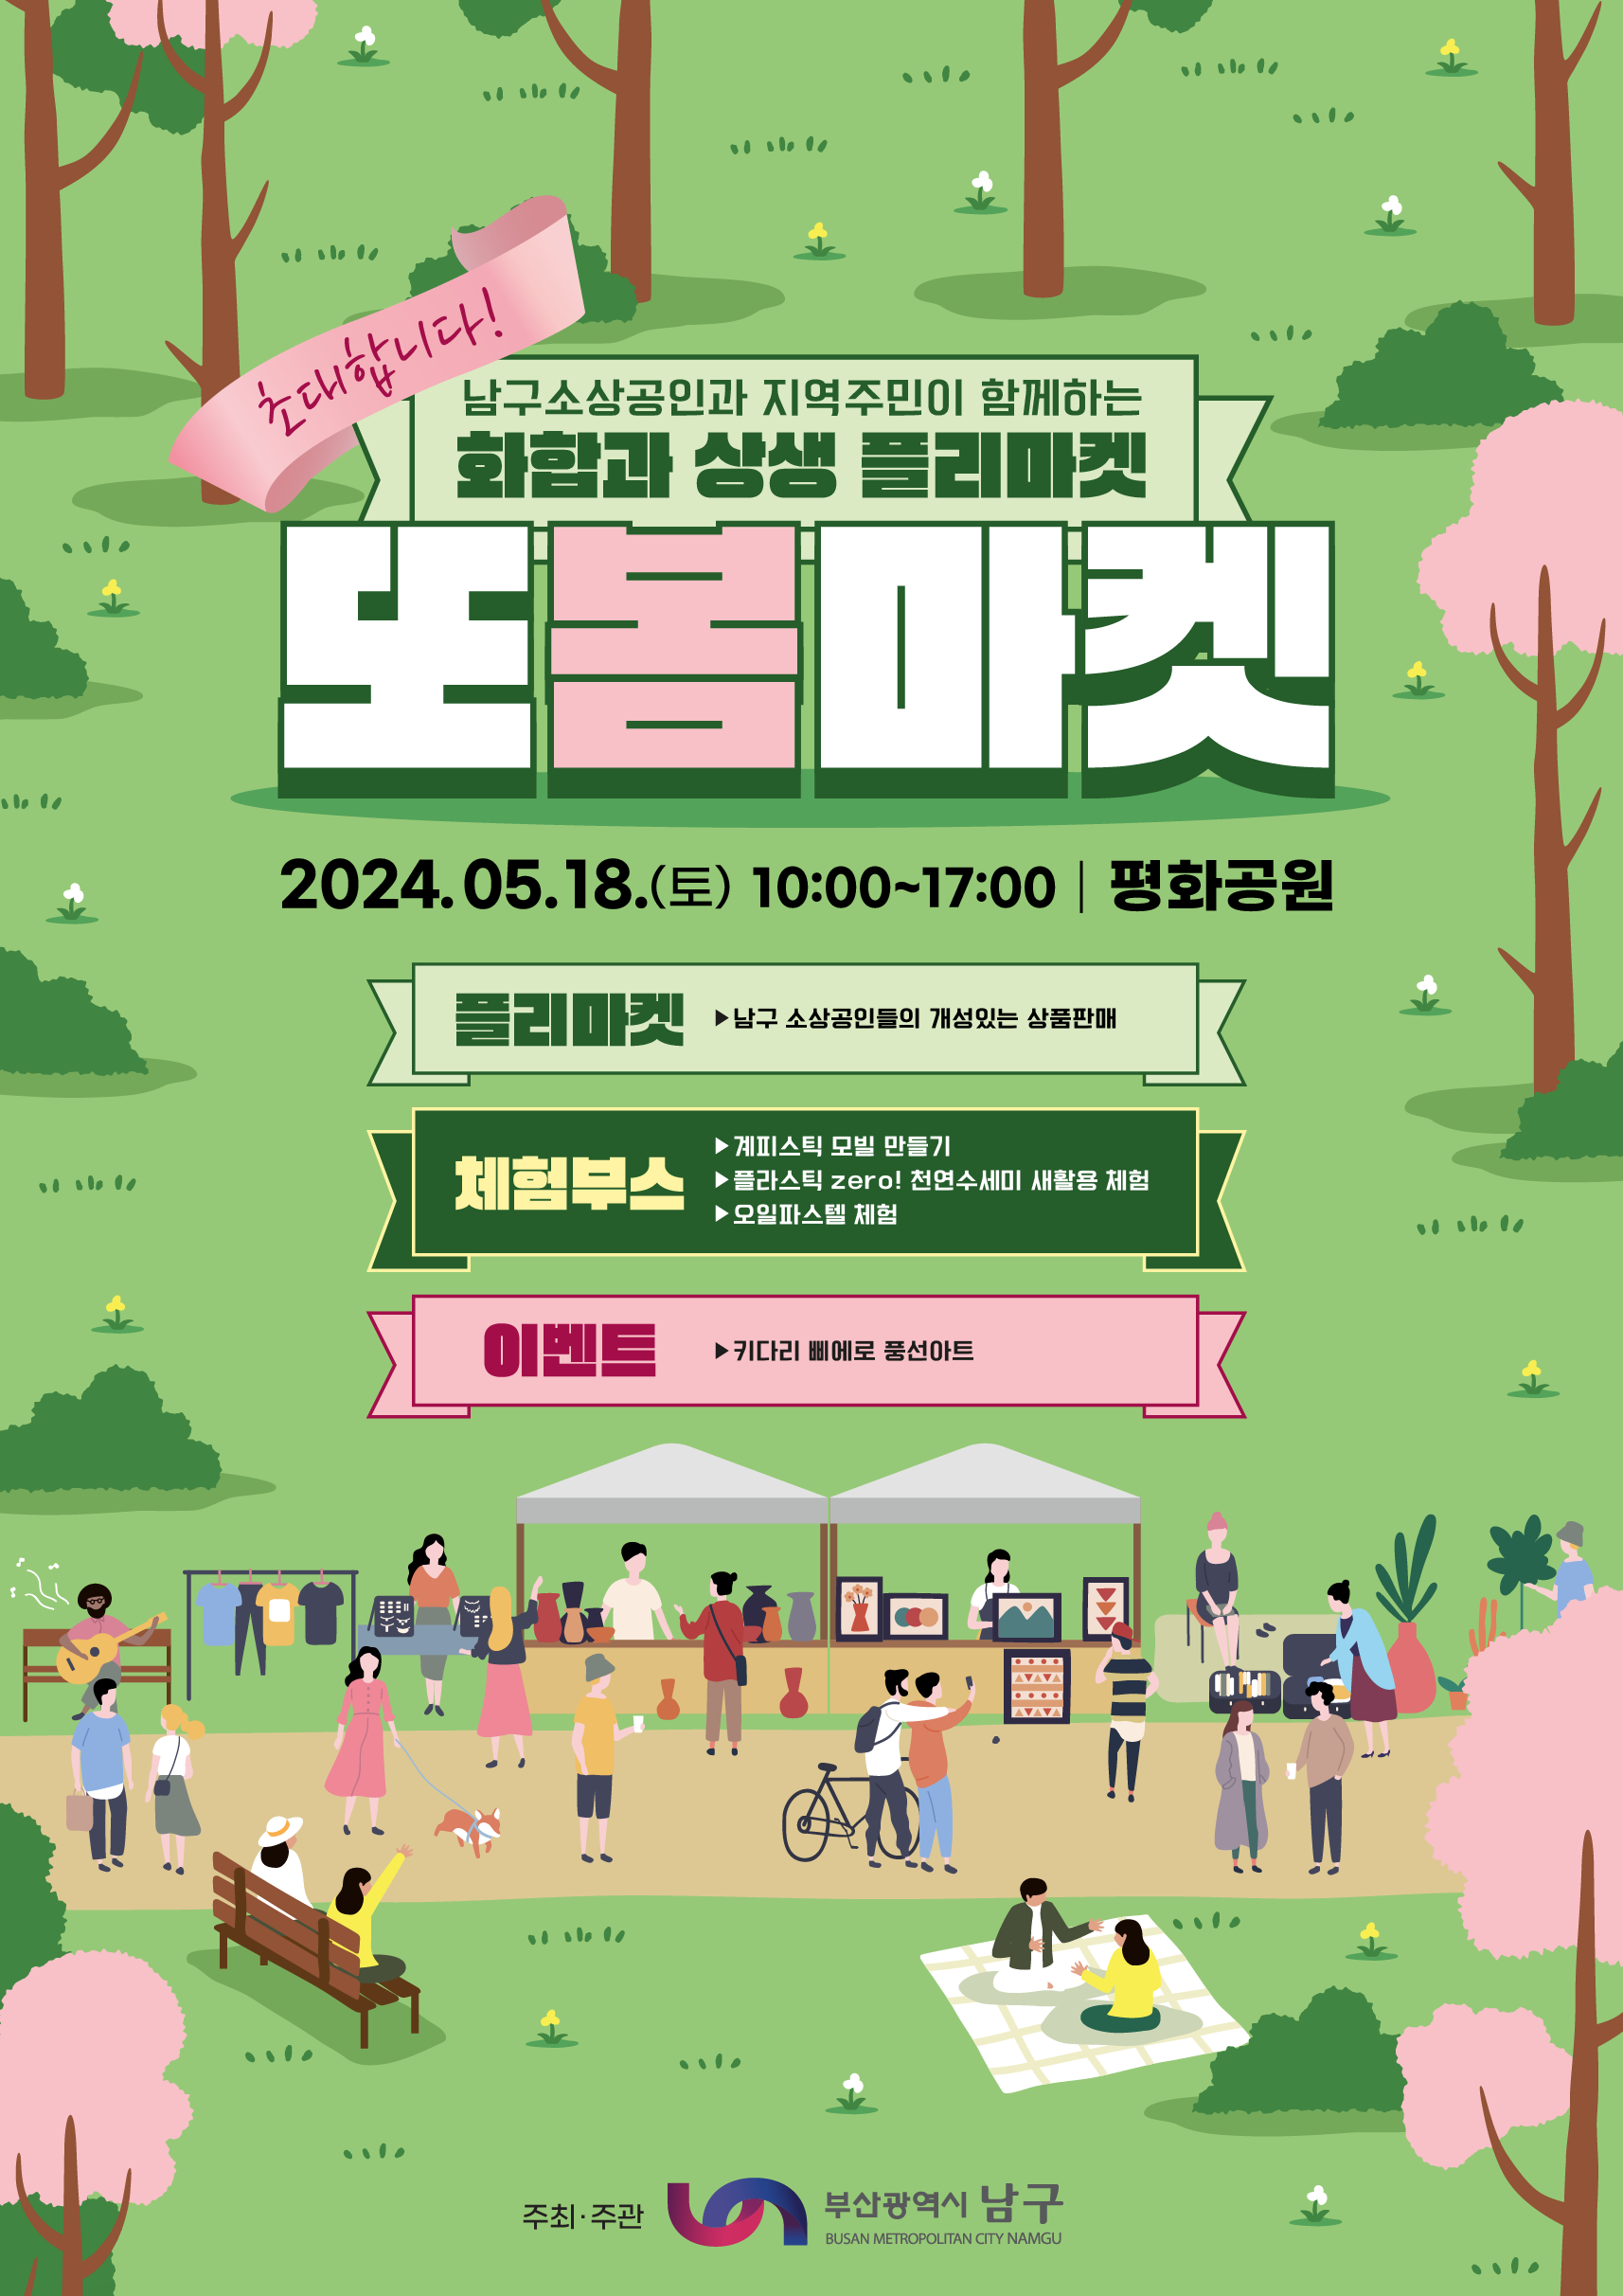 소상공인 홍보장터(또봄마켓) 개최